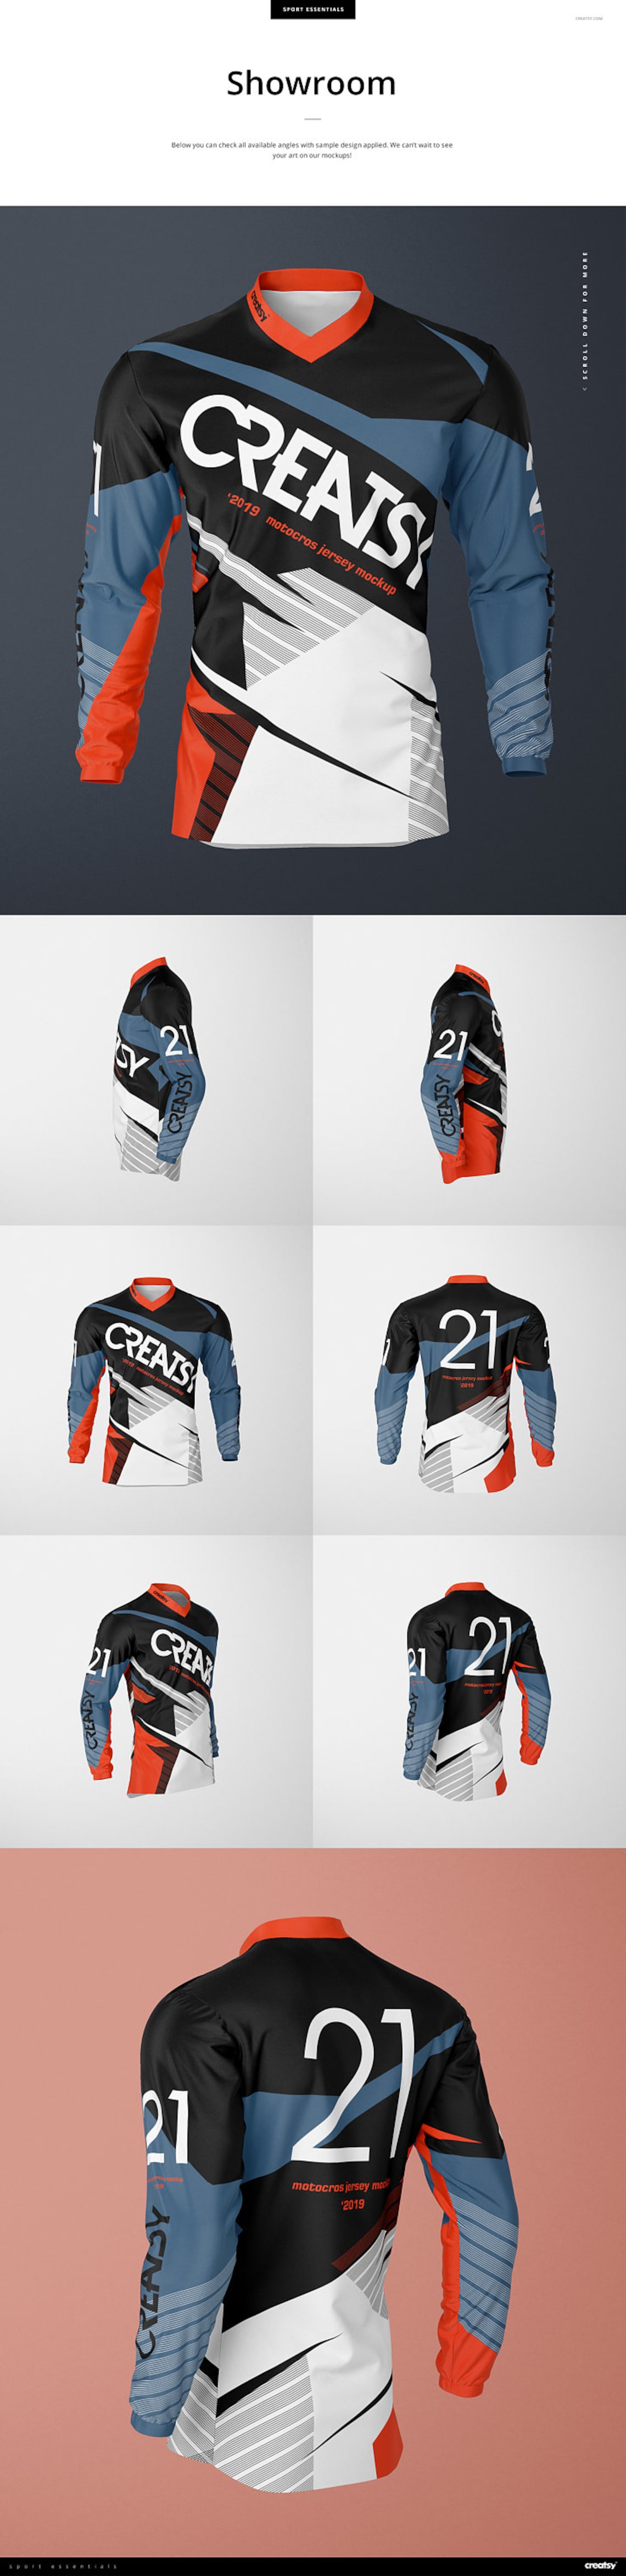 Motocross Jersey Mockup Set | Etsy